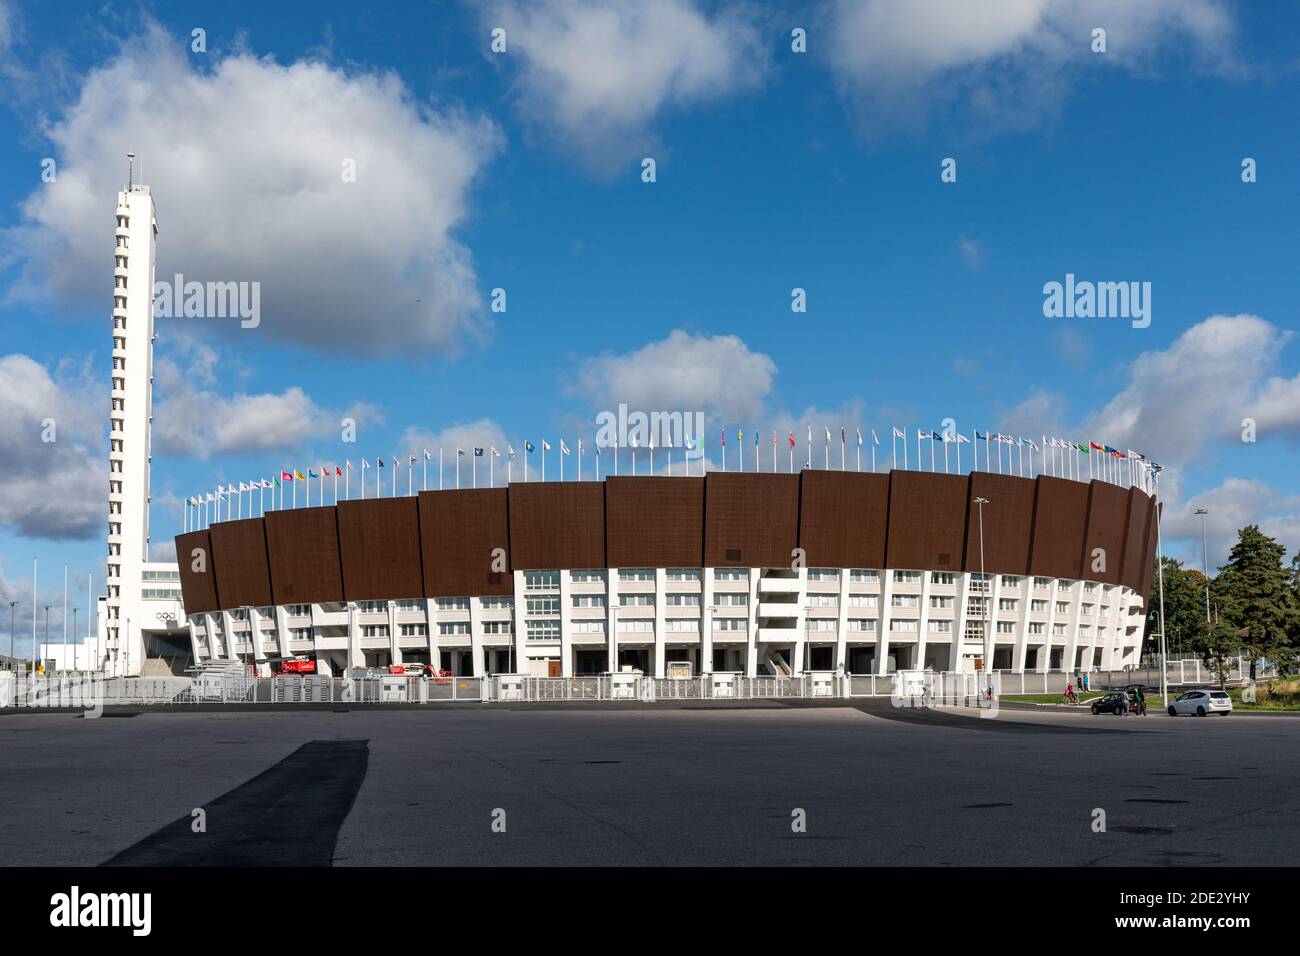 Stade olympique d'Helsinki, site principal des Jeux olympiques d'été de 1952, dans le quartier de Tööölö à Helsinki, en Finlande Banque D'Images